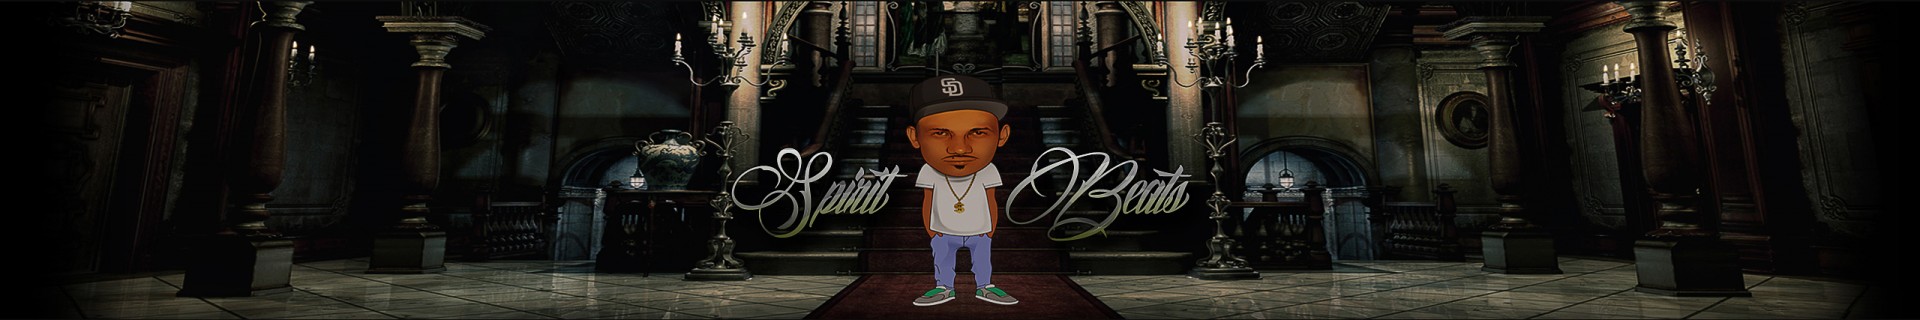 spiritbeats profile cover